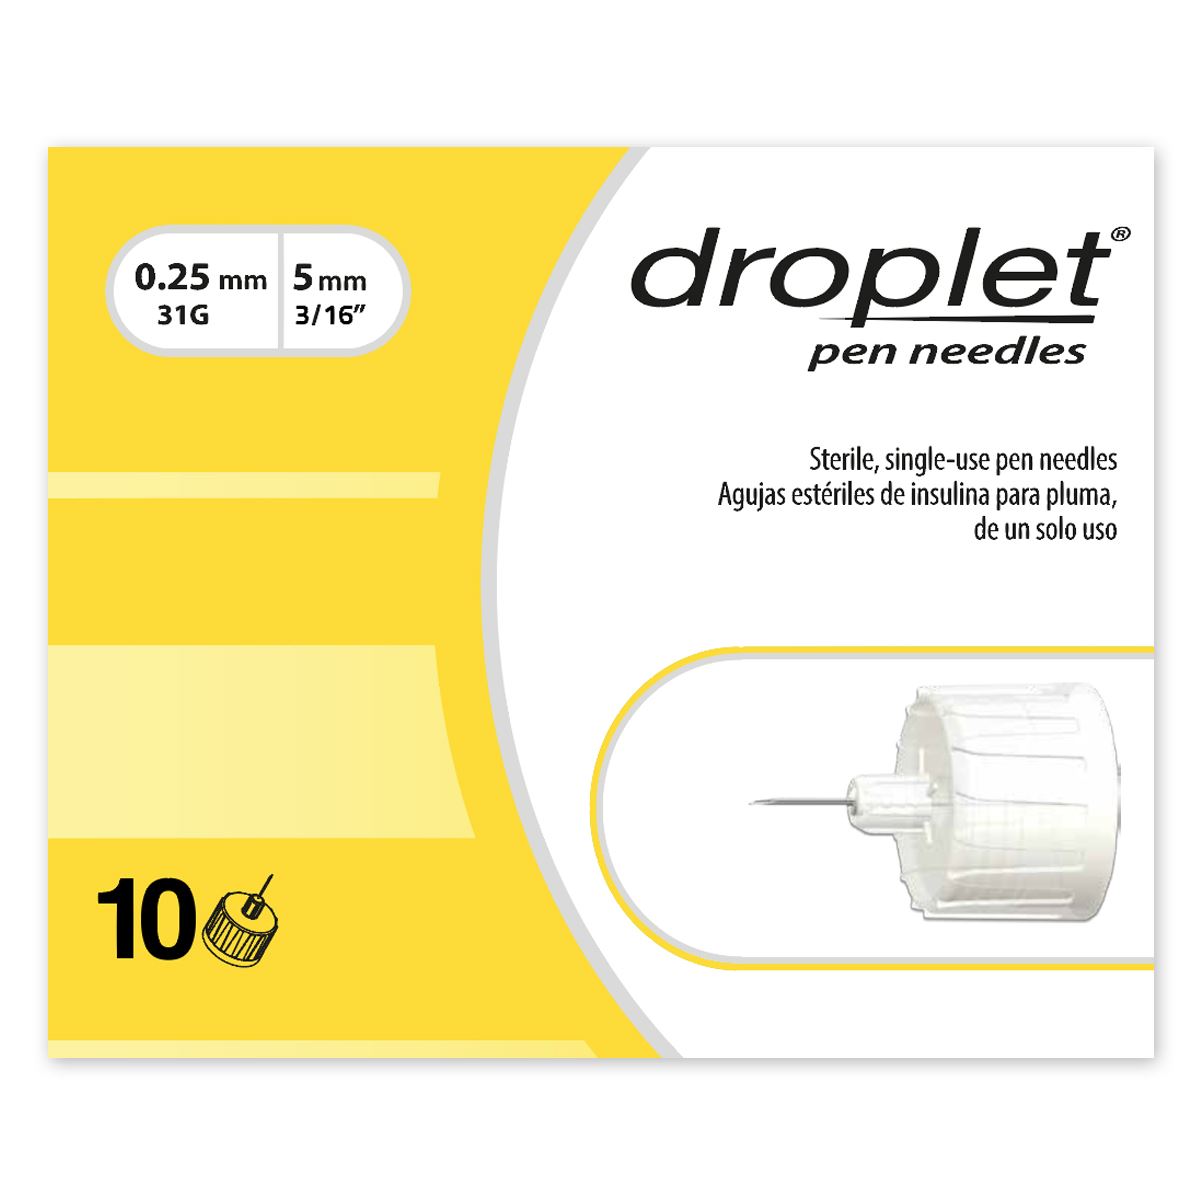 Aguja para Pluma de Insulina Droplet Pen Needles con 10